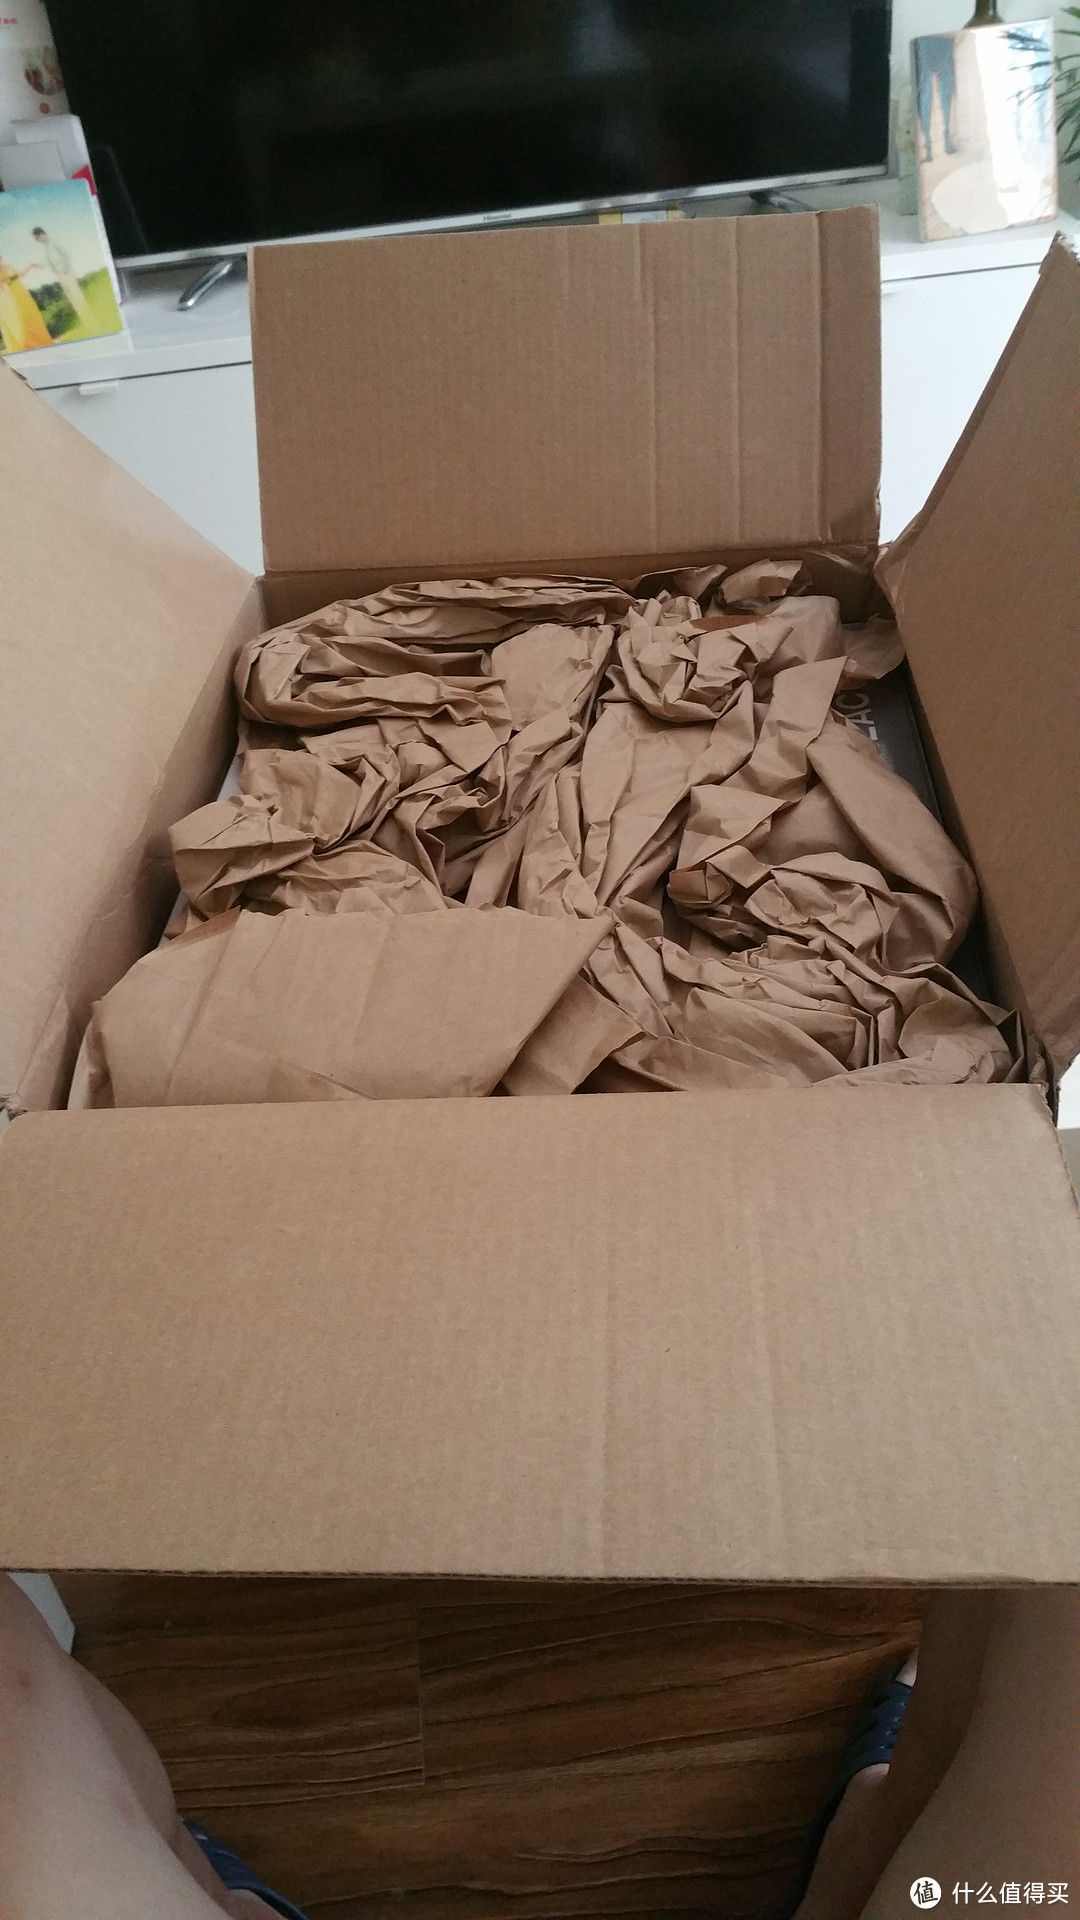 大箱子里面打开后，全是纸团